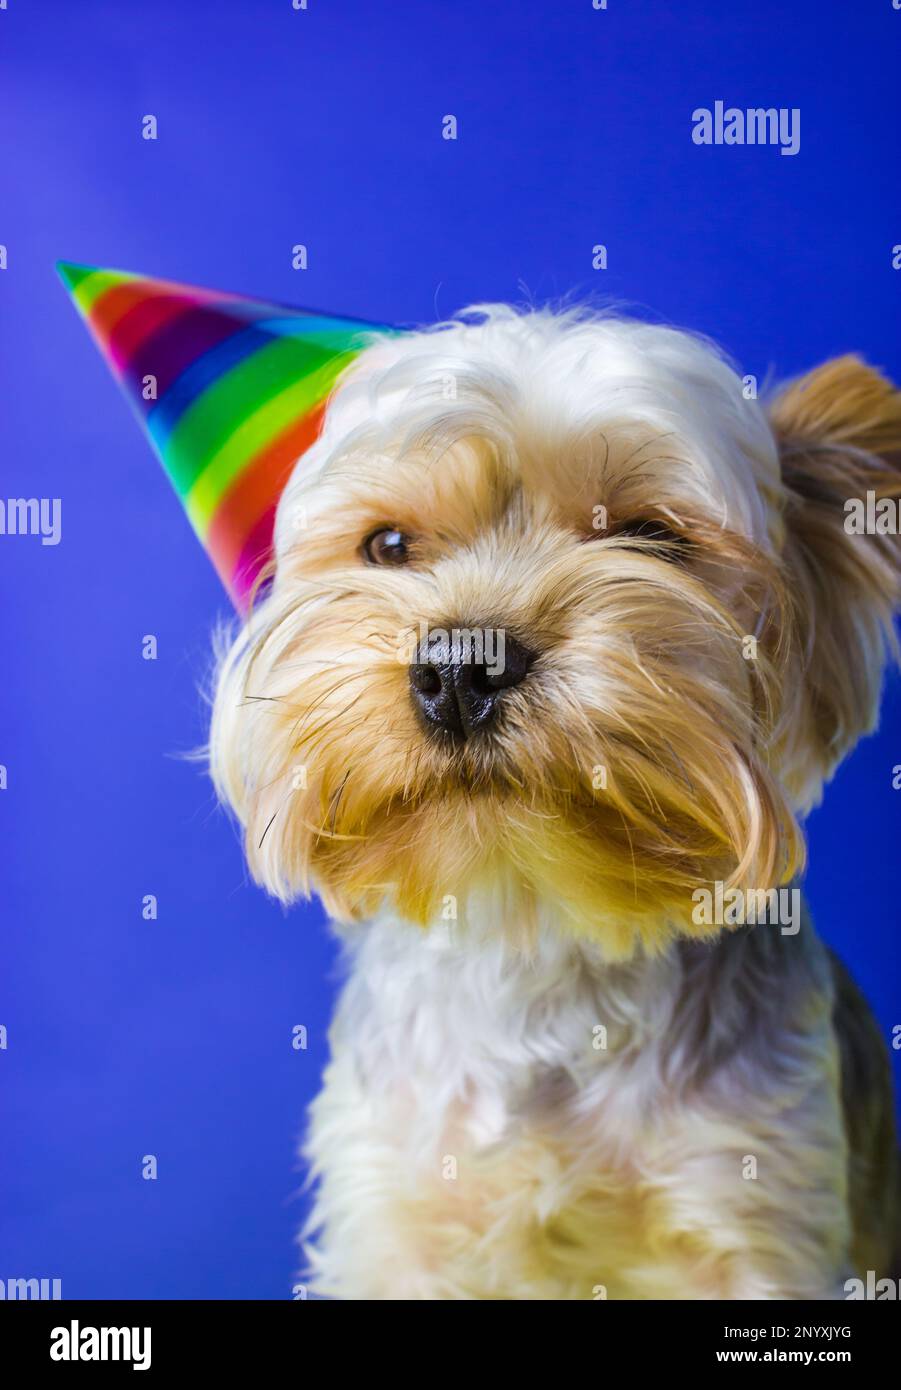 Lustige, reizende Hundezucht Yorkshire Terrier mit festlicher Mütze auf dem Kopf feiert Geburtstag, Jubiläum. Lustiges Hündchen als Geschenk. Hundeporträt-Mündung, schwarz Stockfoto